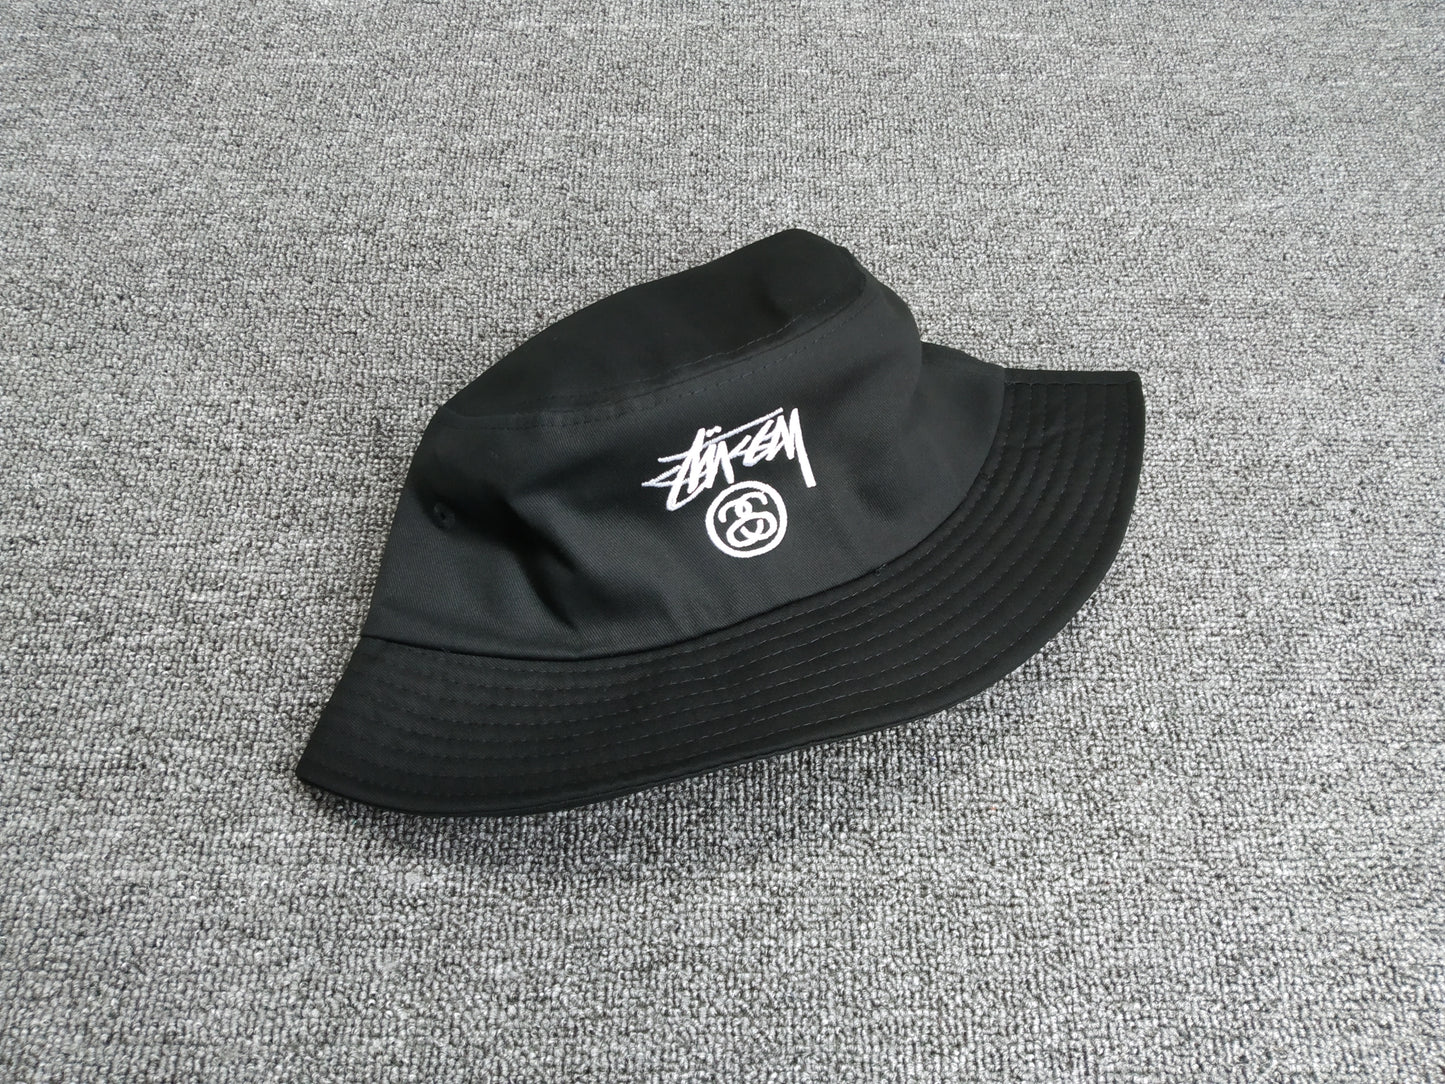 Stussy "Bucket Hat" (Black & White)